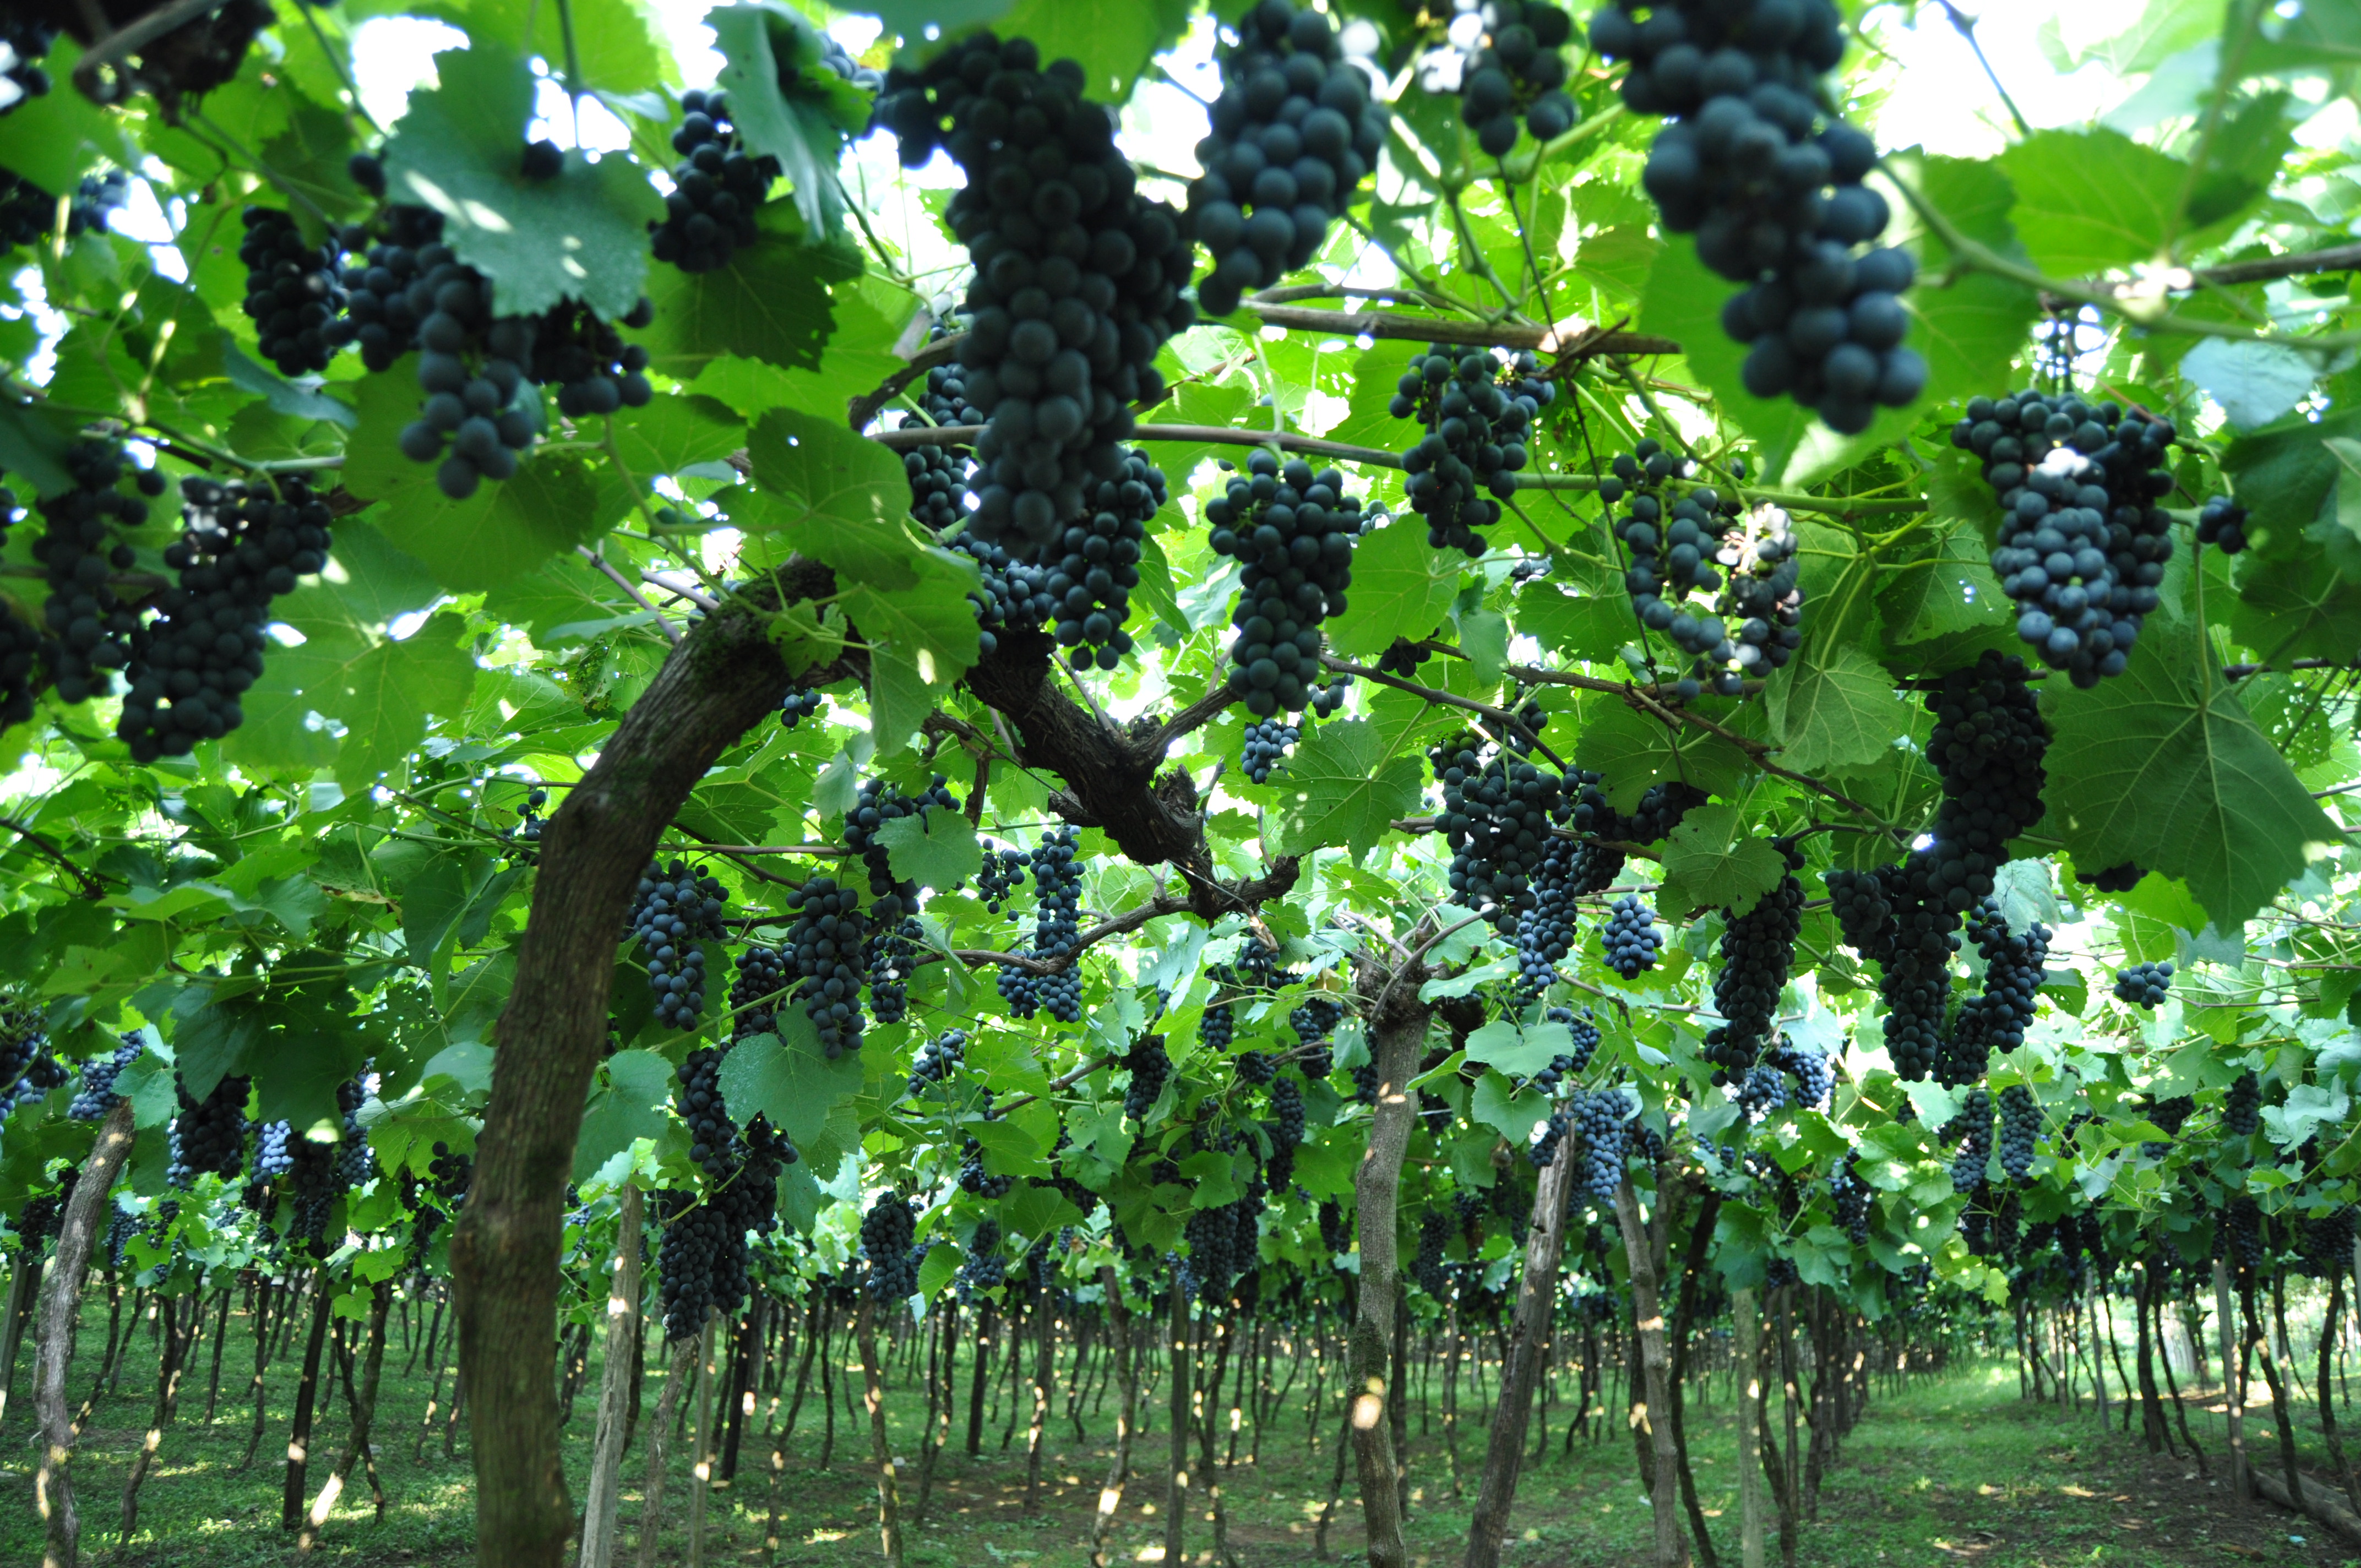 Safra de uva deve contabilizar 700 mil toneladas colhidas no Estado - Gazeta